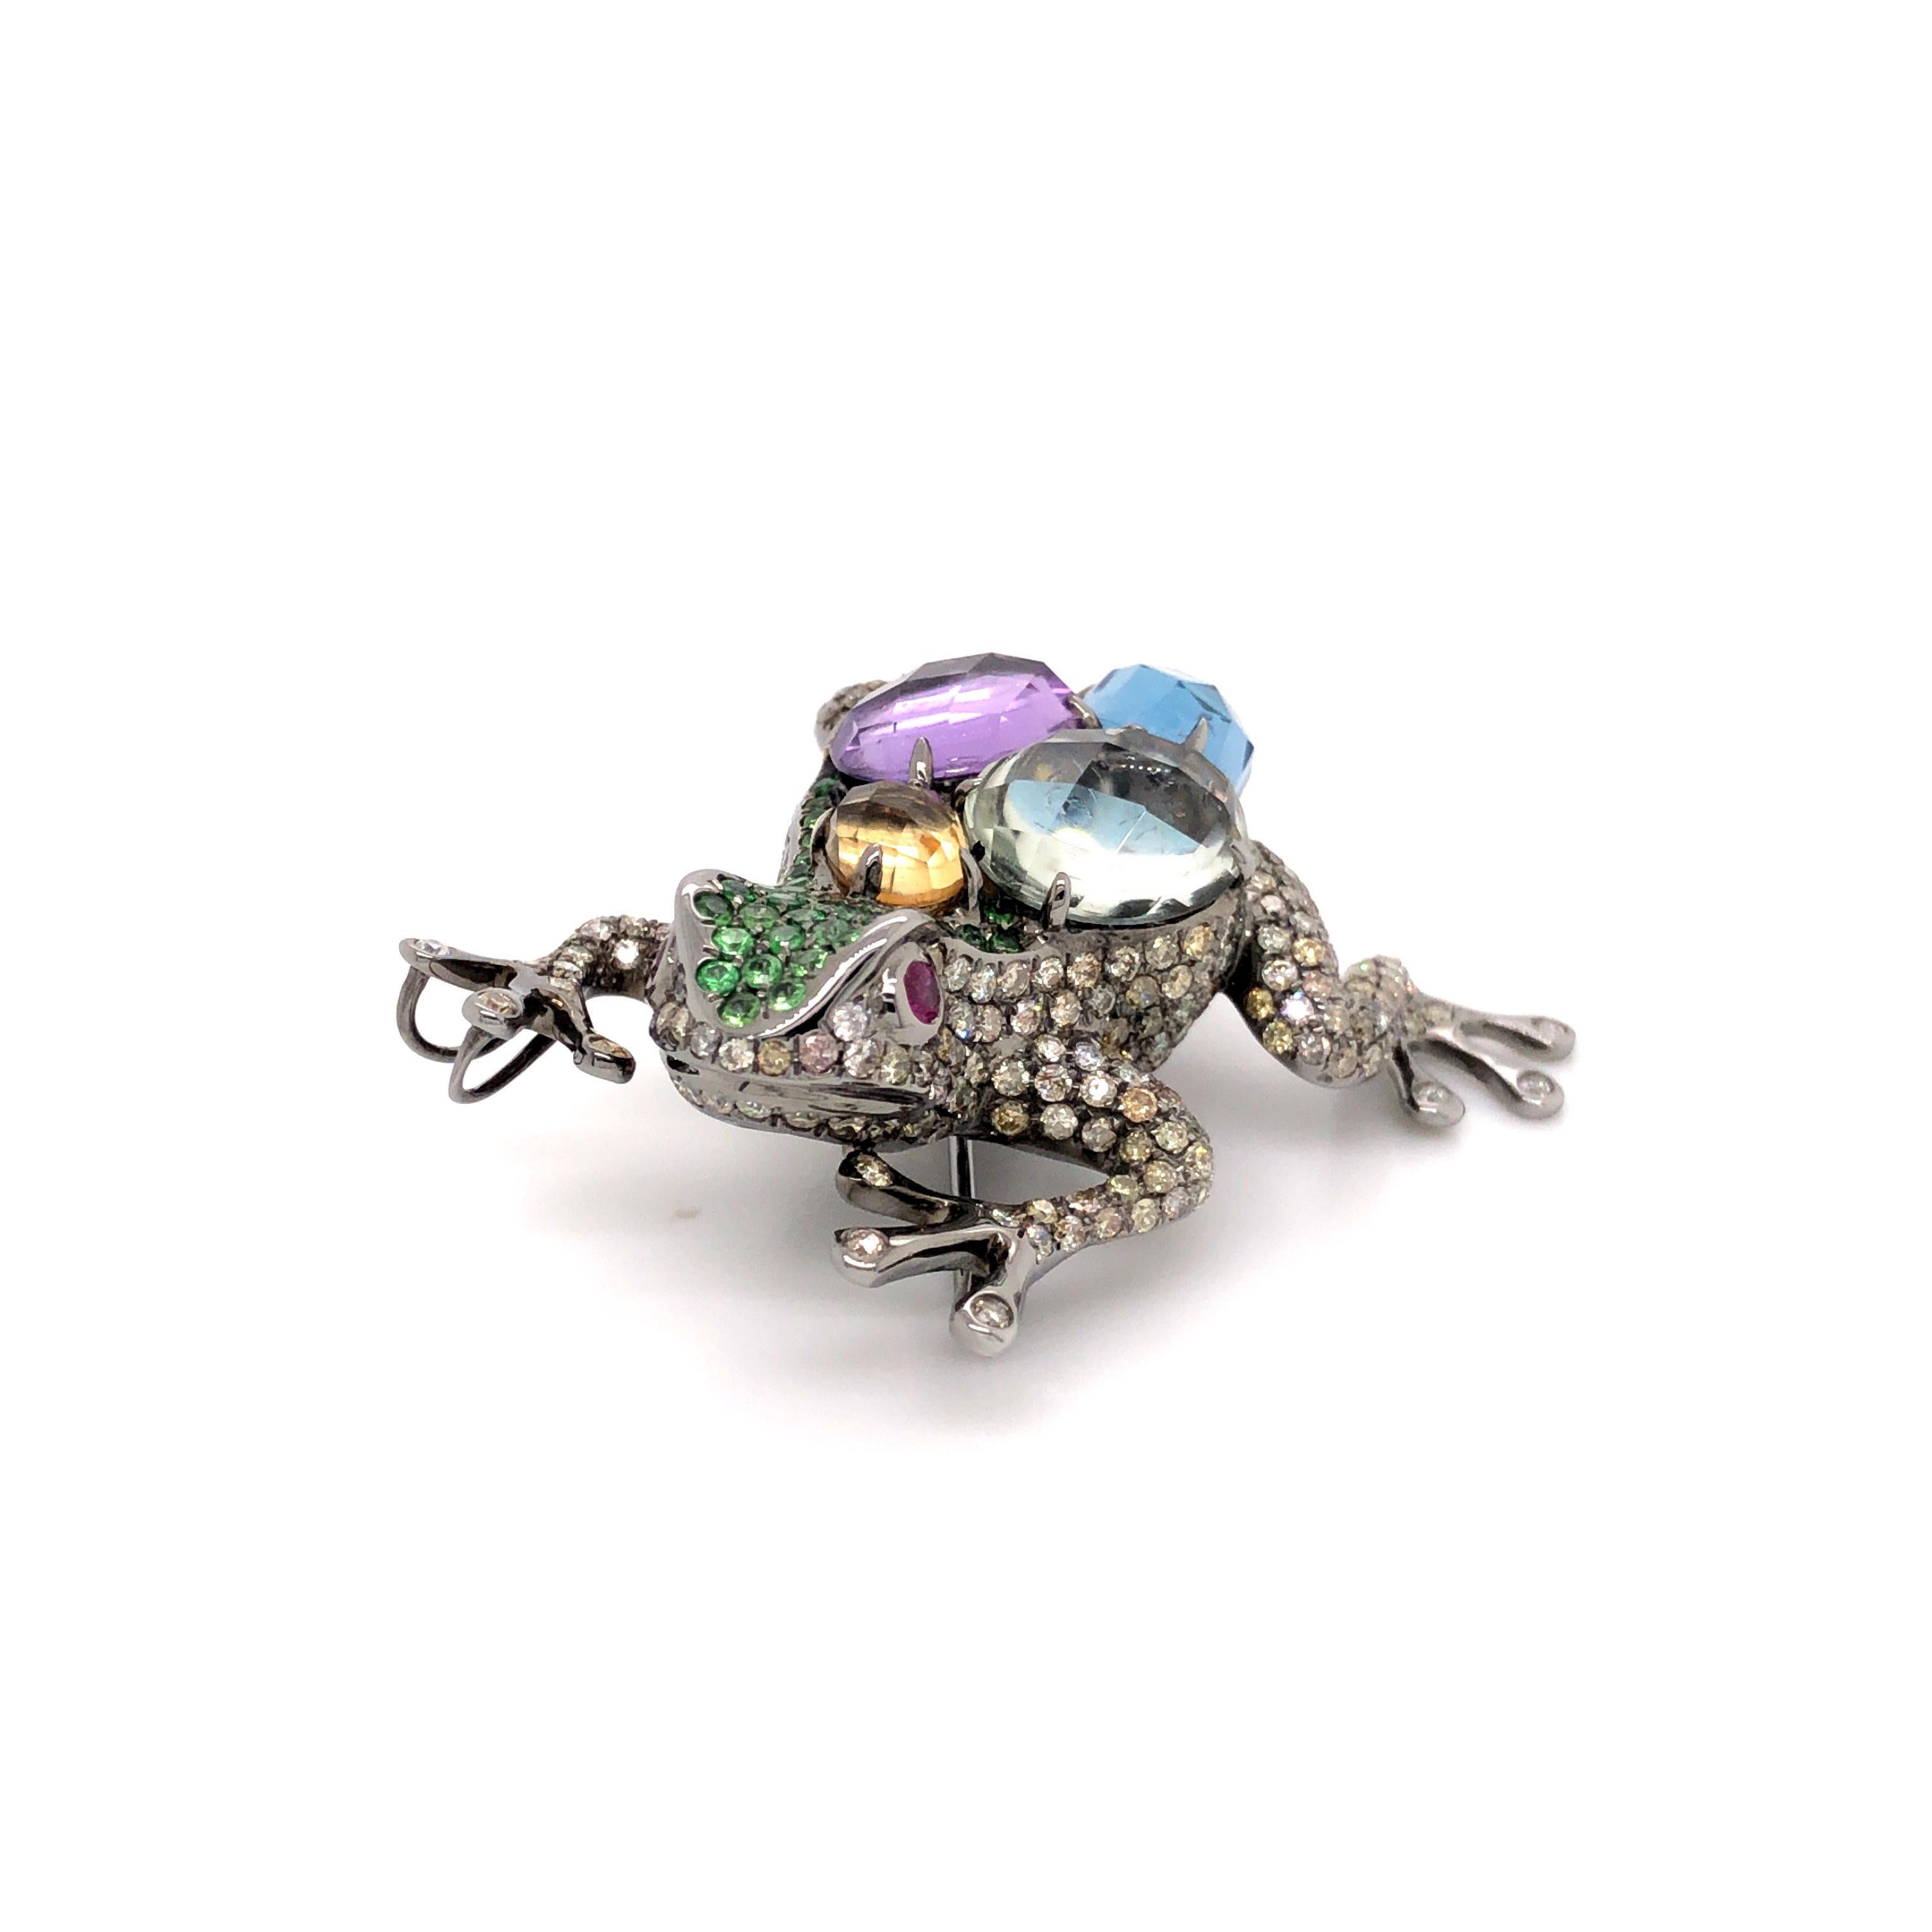 Le pendentif et la broche grenouille dorsale multicolore en diamant, tsavorite et rubis est une pièce fantaisiste et captivante qui capture l'esprit de la nature d'une manière unique. Le pendentif et la broche sont ornés d'une grenouille au design